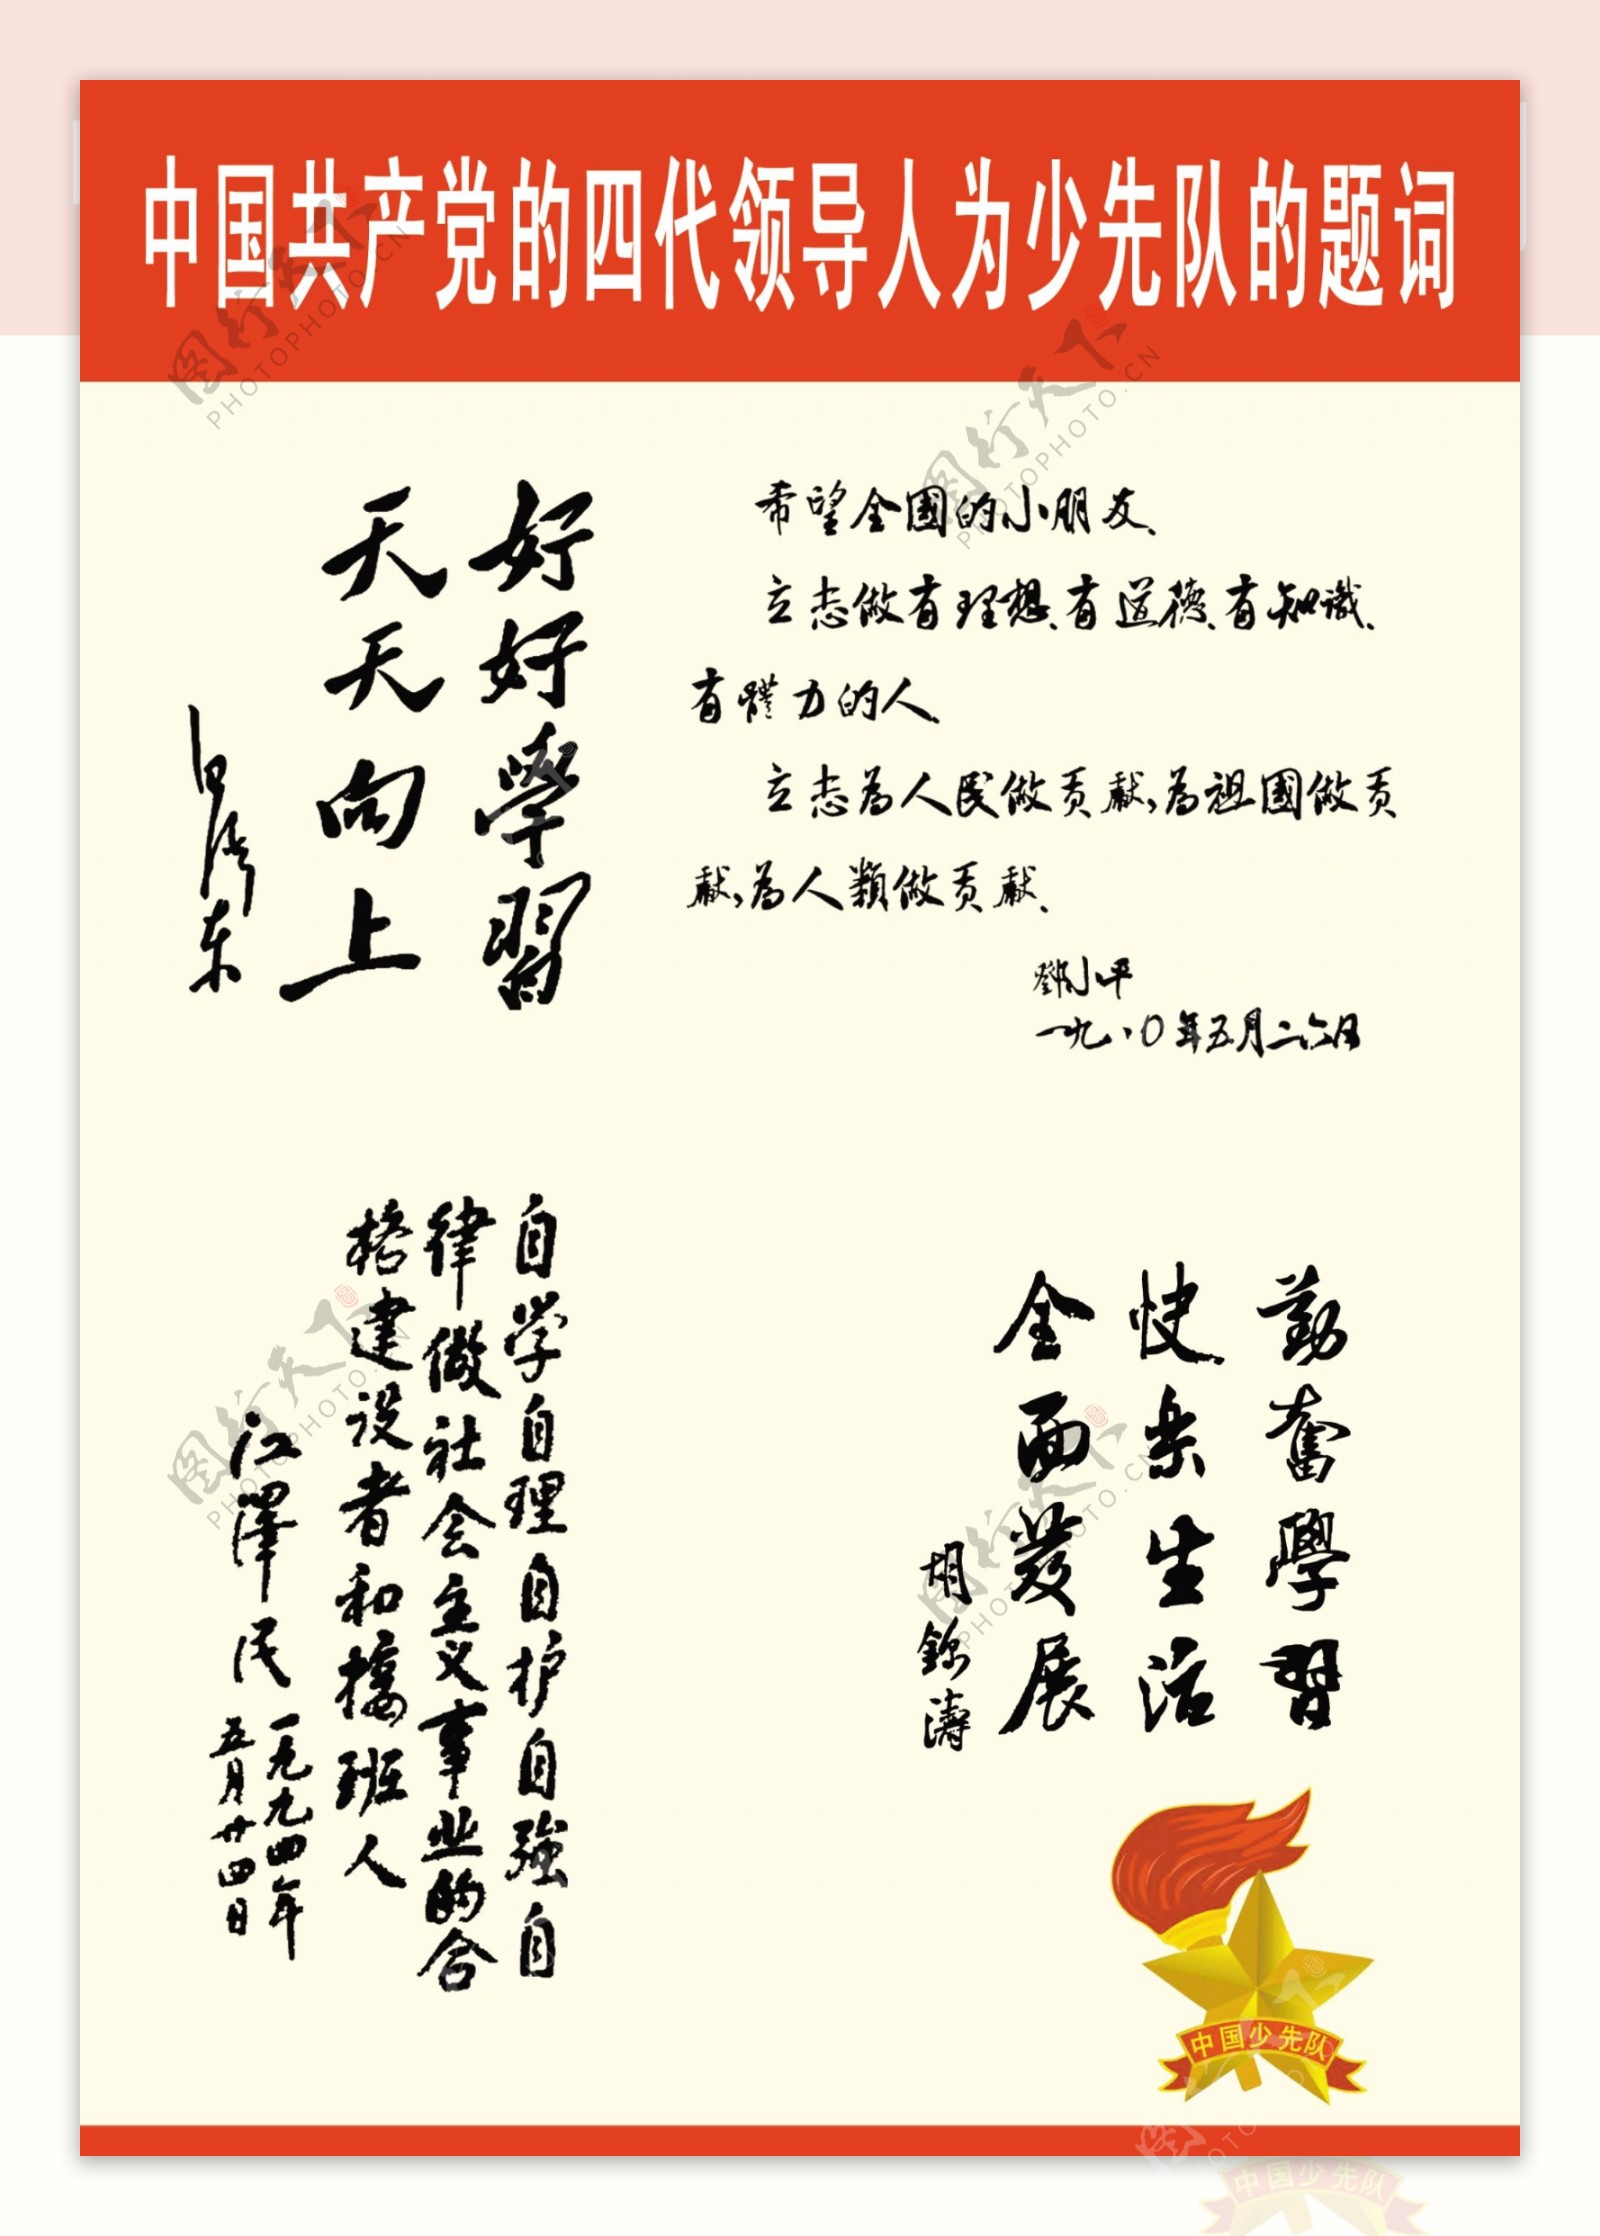 中国共主党四代领导人为少先队题词图片